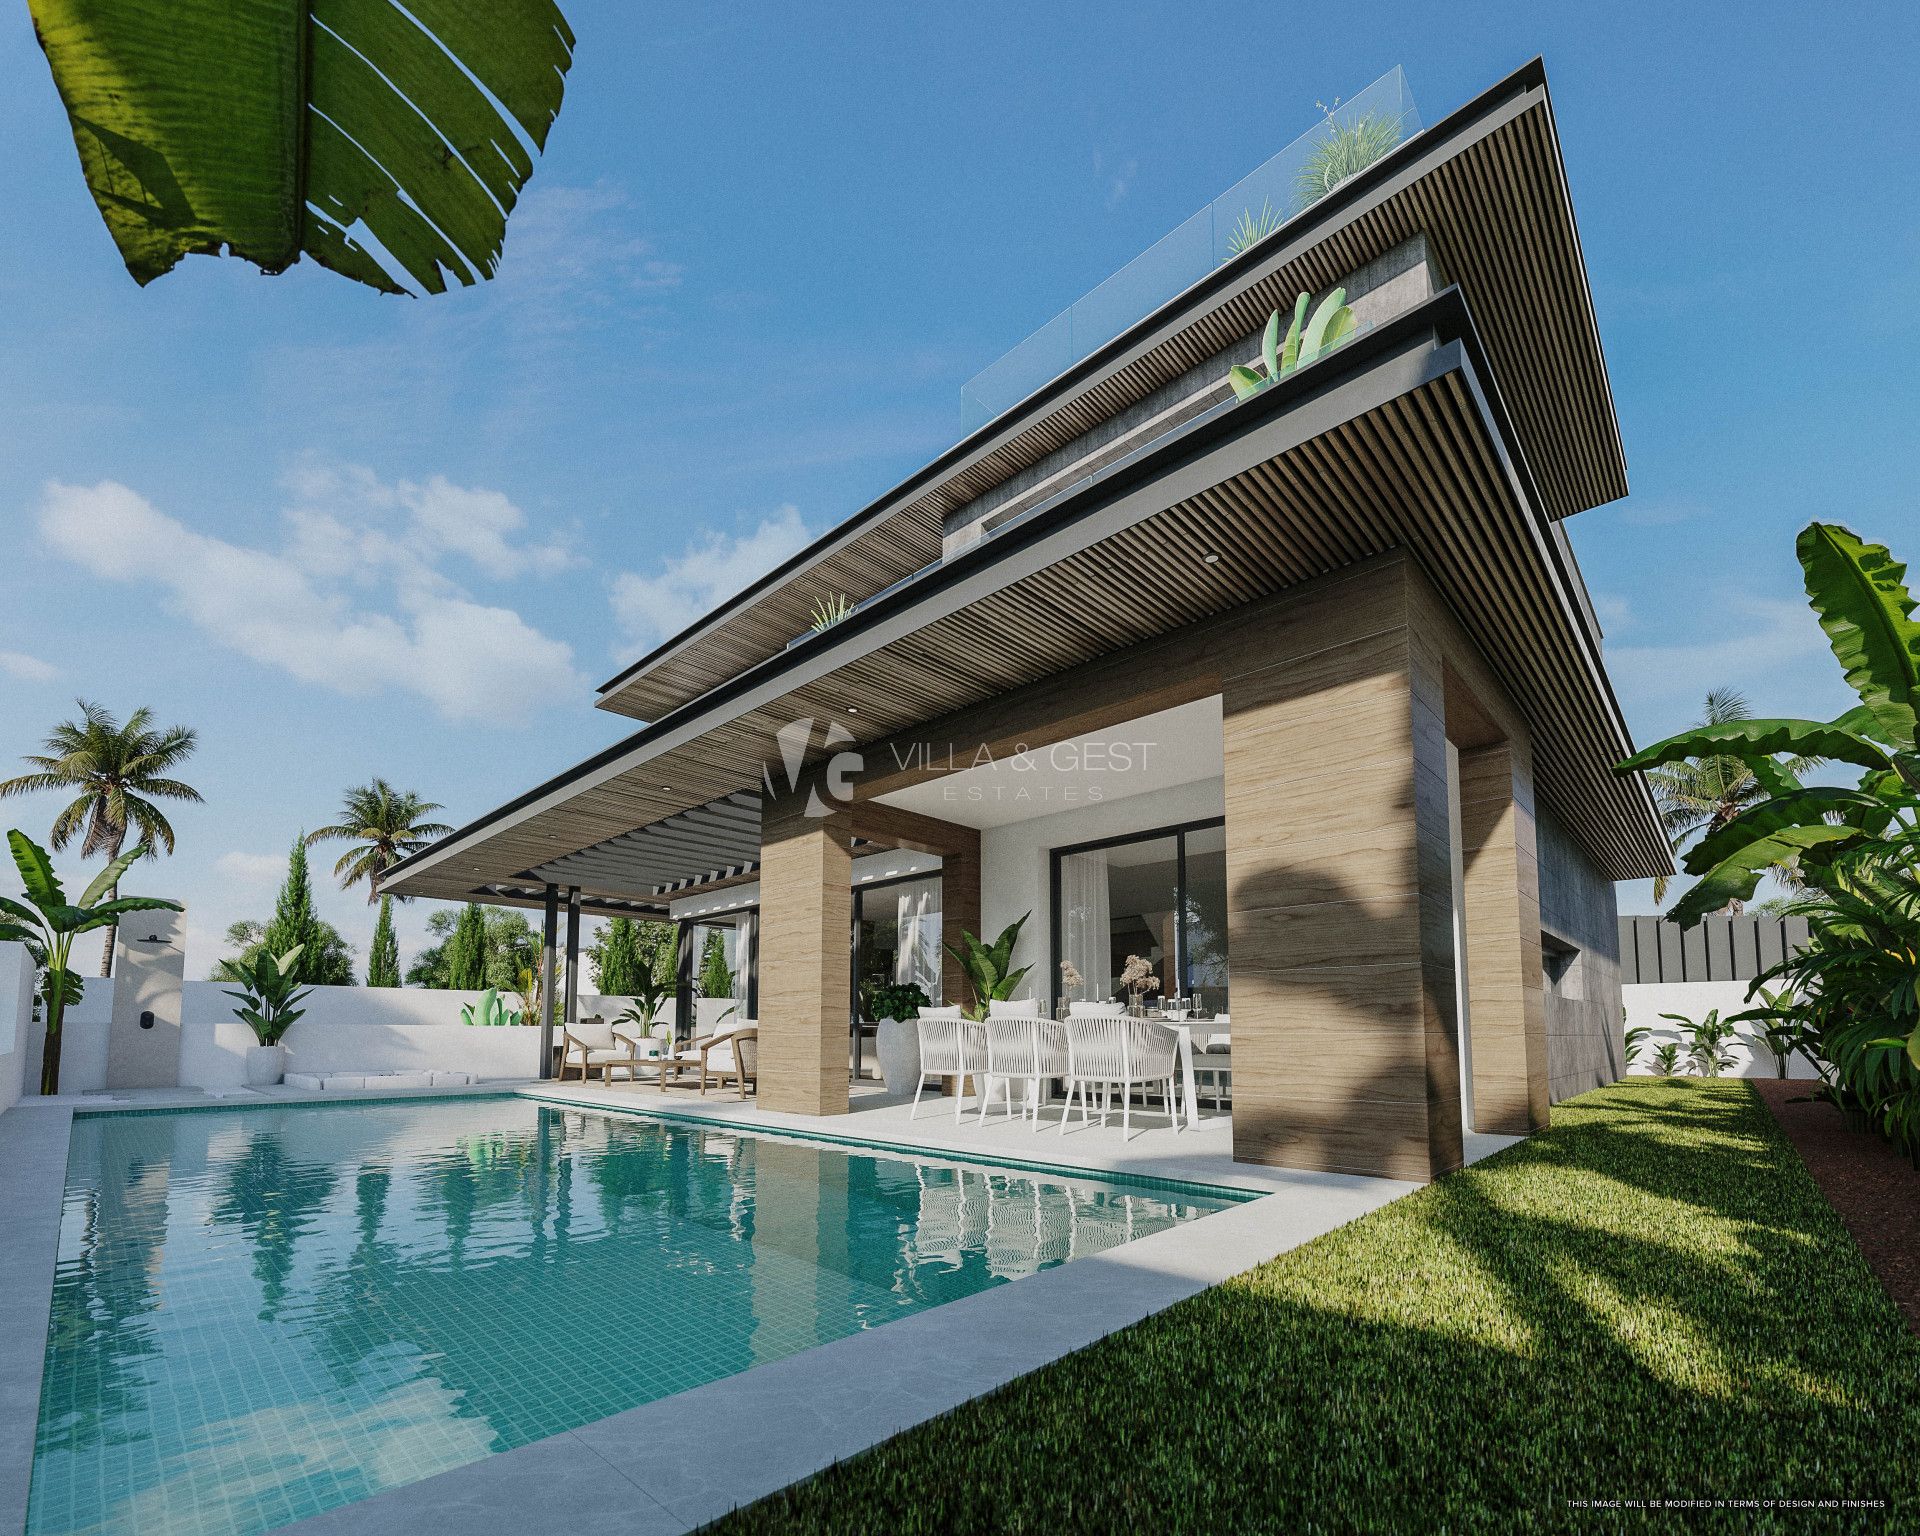 Bali Villas, New Development in Mijas Costa